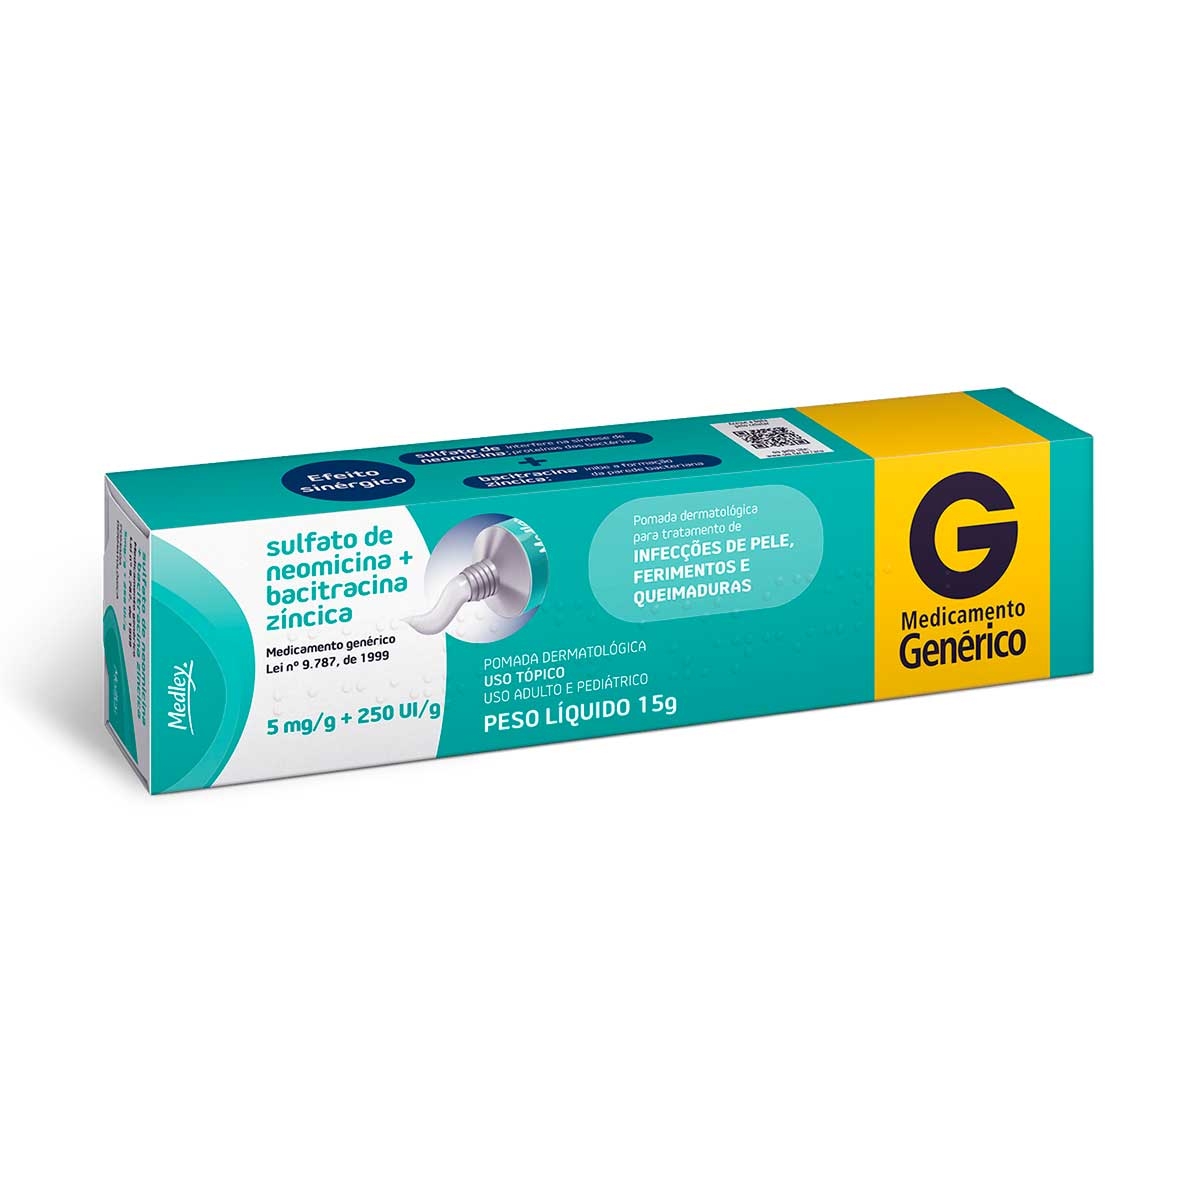 Daforin 20mg 20 Comprimidos C1 - PanVel Farmácias